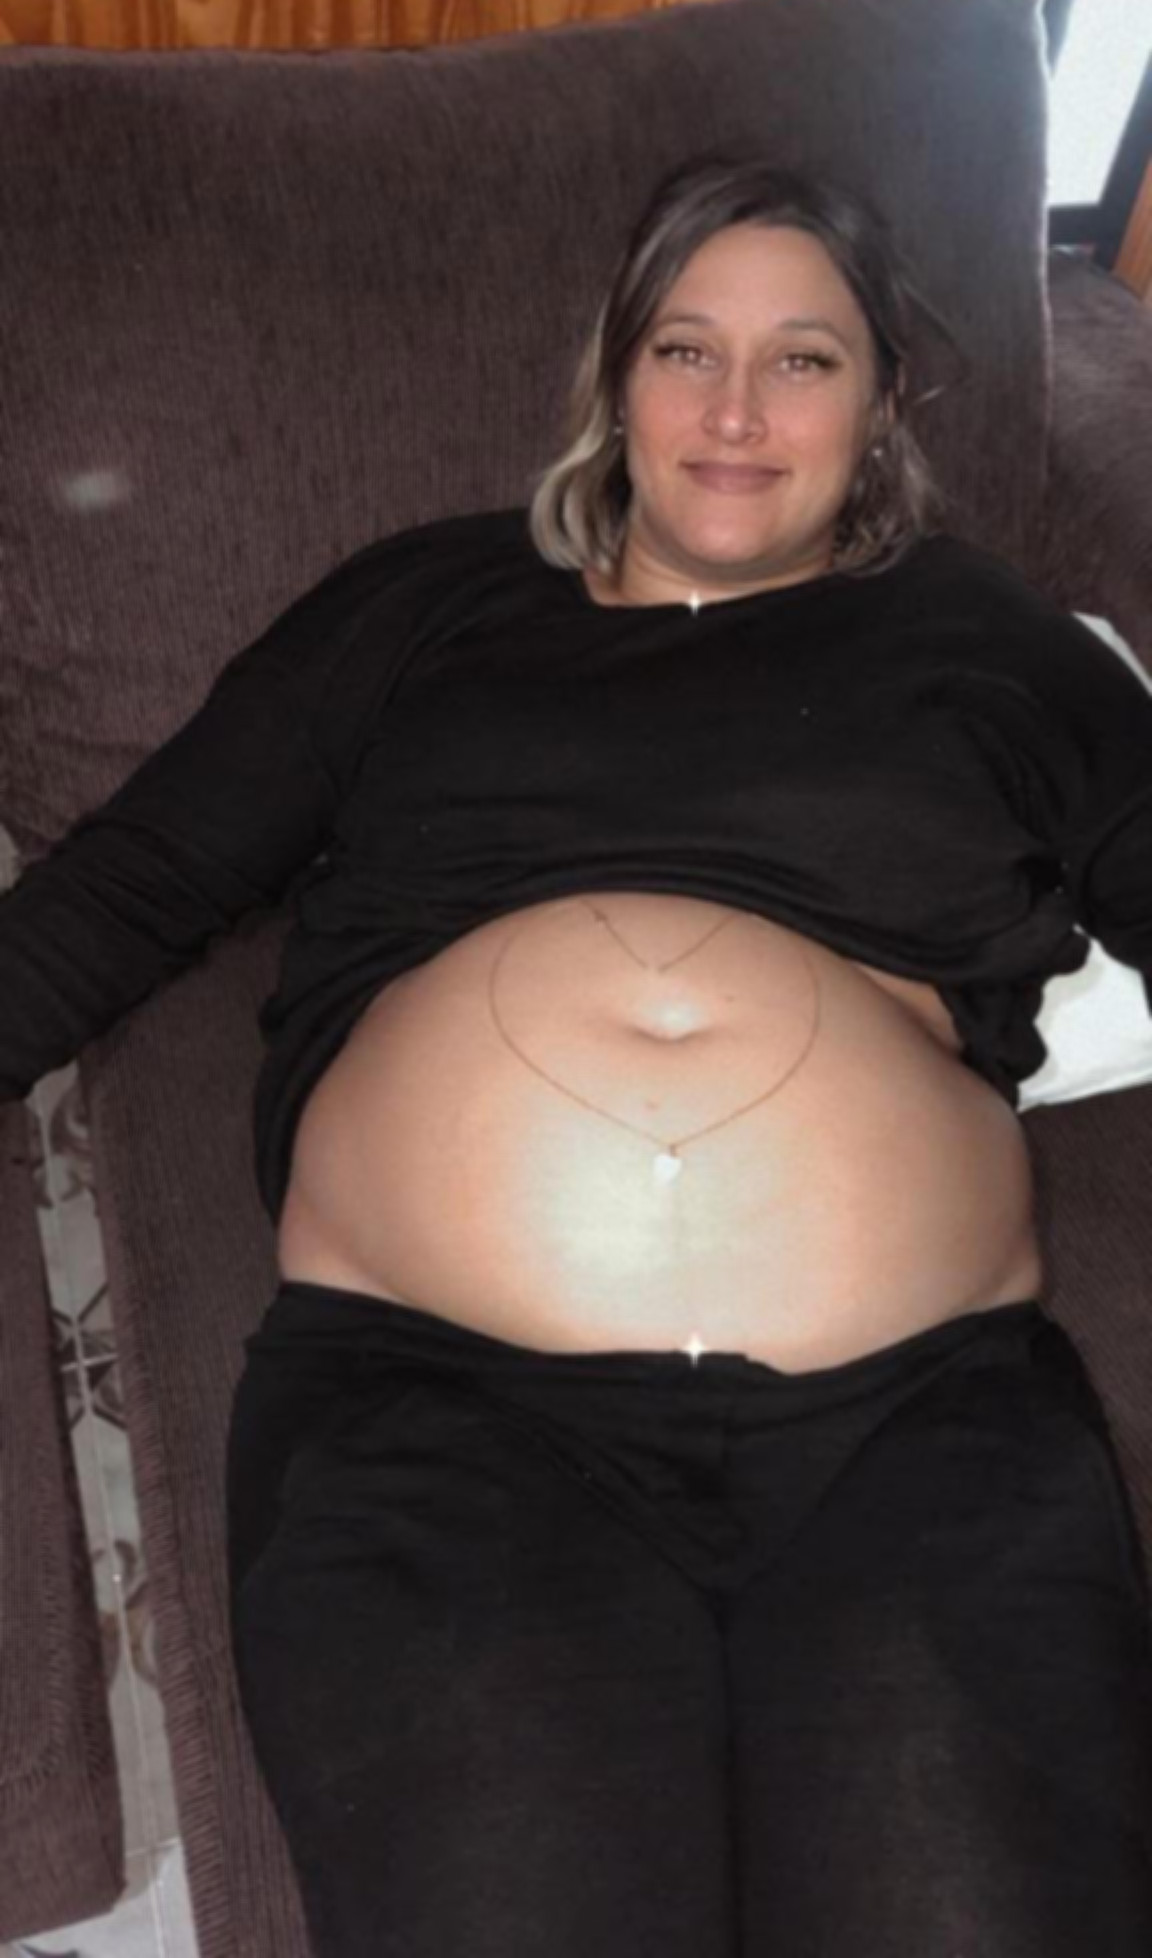 Paola Nucci, en la plenitud de su embarazo de 5 meses 